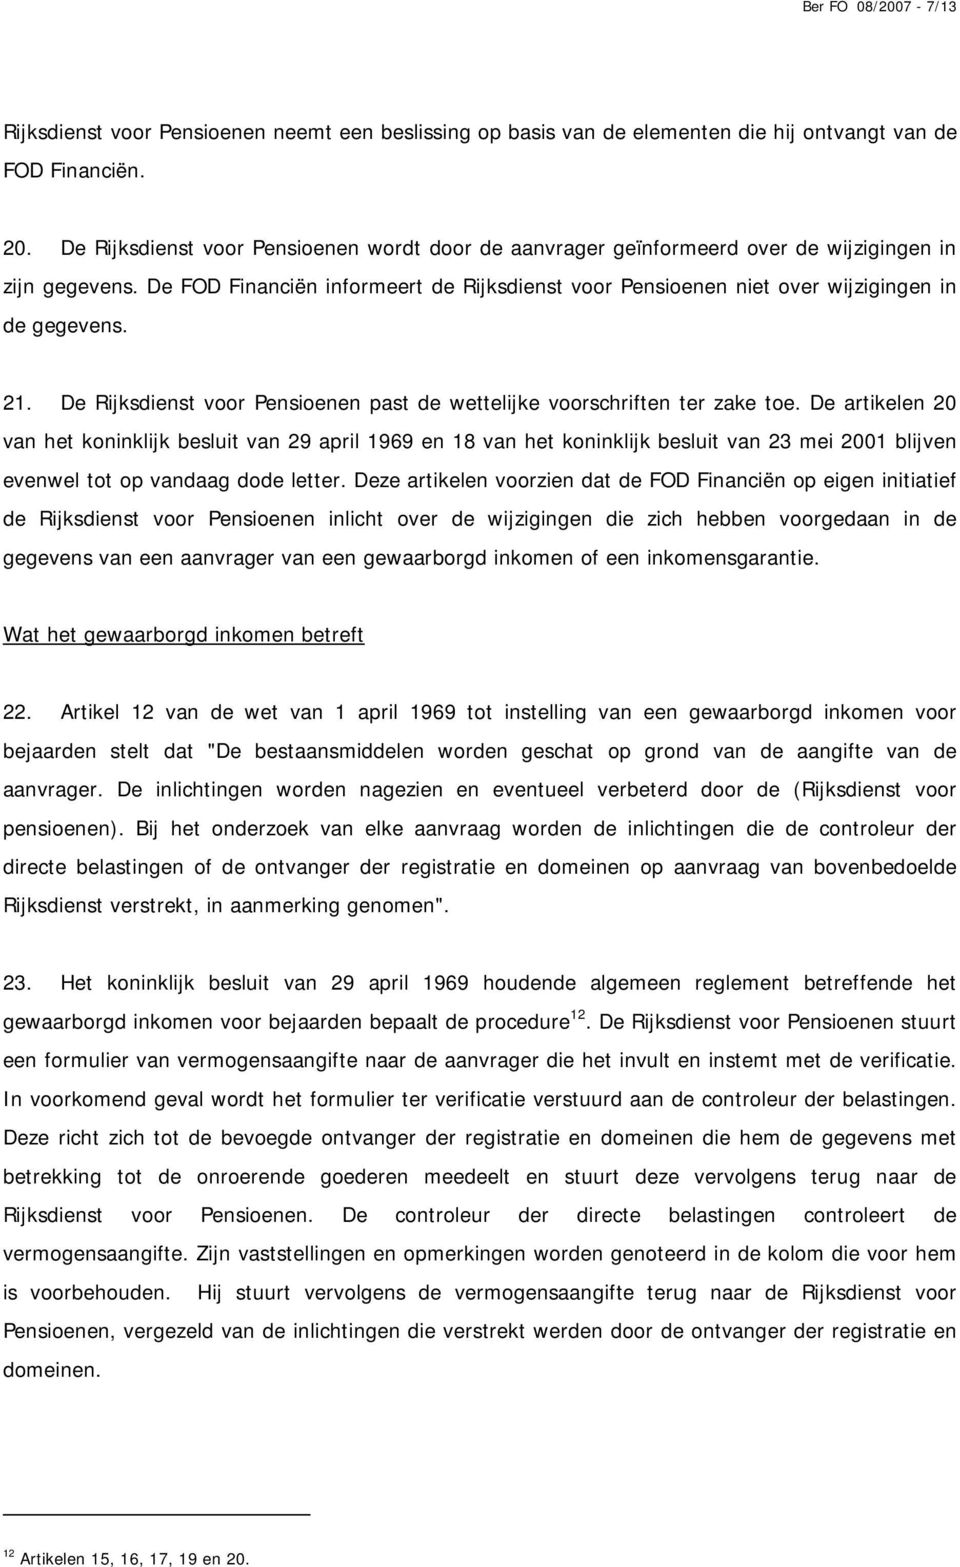 De FOD Financiën informeert de Rijksdienst voor Pensioenen niet over wijzigingen in de gegevens. 21. De Rijksdienst voor Pensioenen past de wettelijke voorschriften ter zake toe.